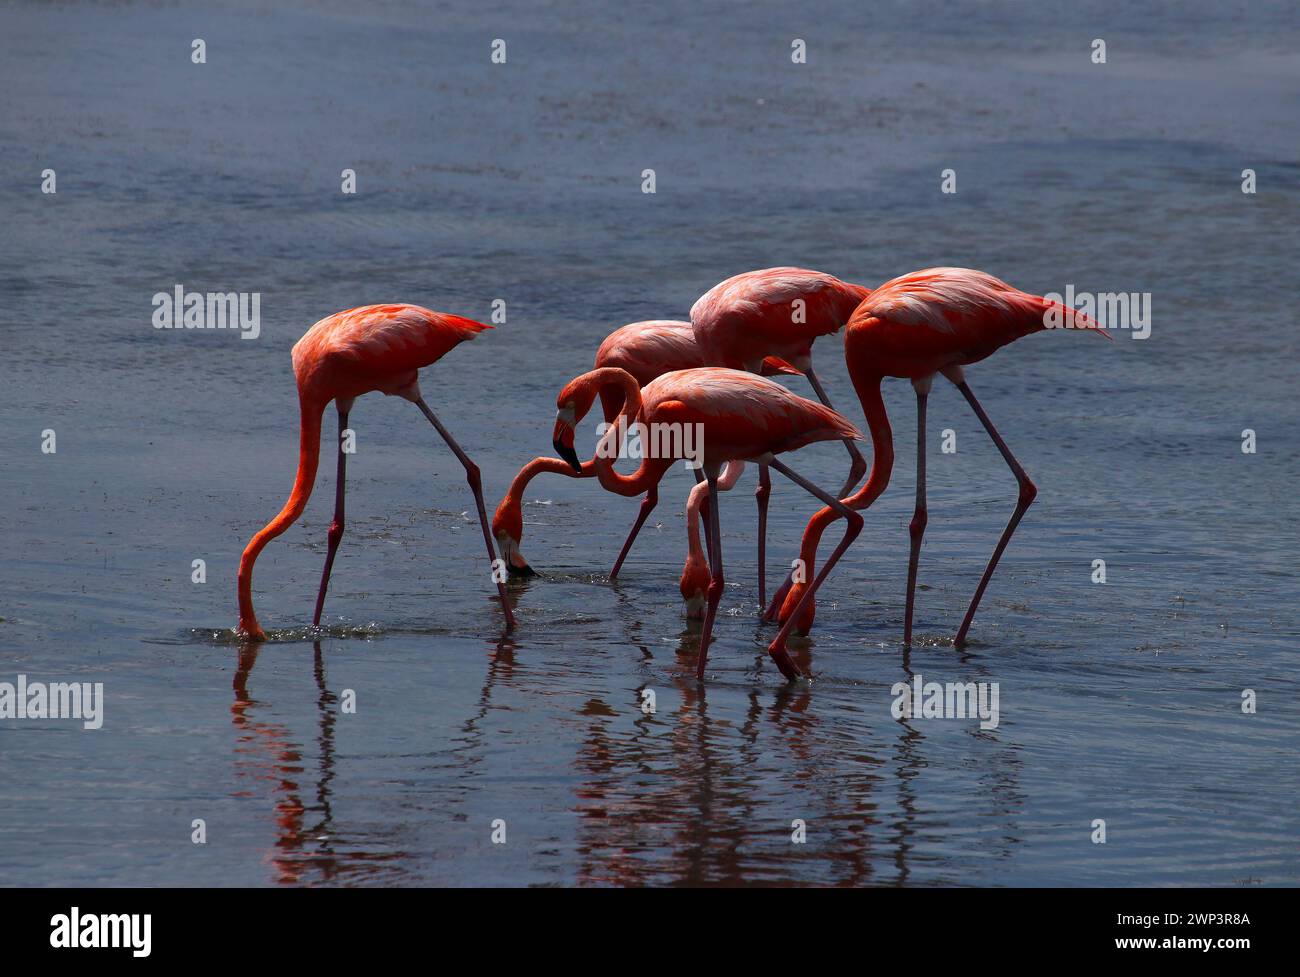 Gruppe rosafarbener Flamingos, die in Lagunengewässern auf der Suche sind (Bonaire, Karibik Niederlande) Stockfoto